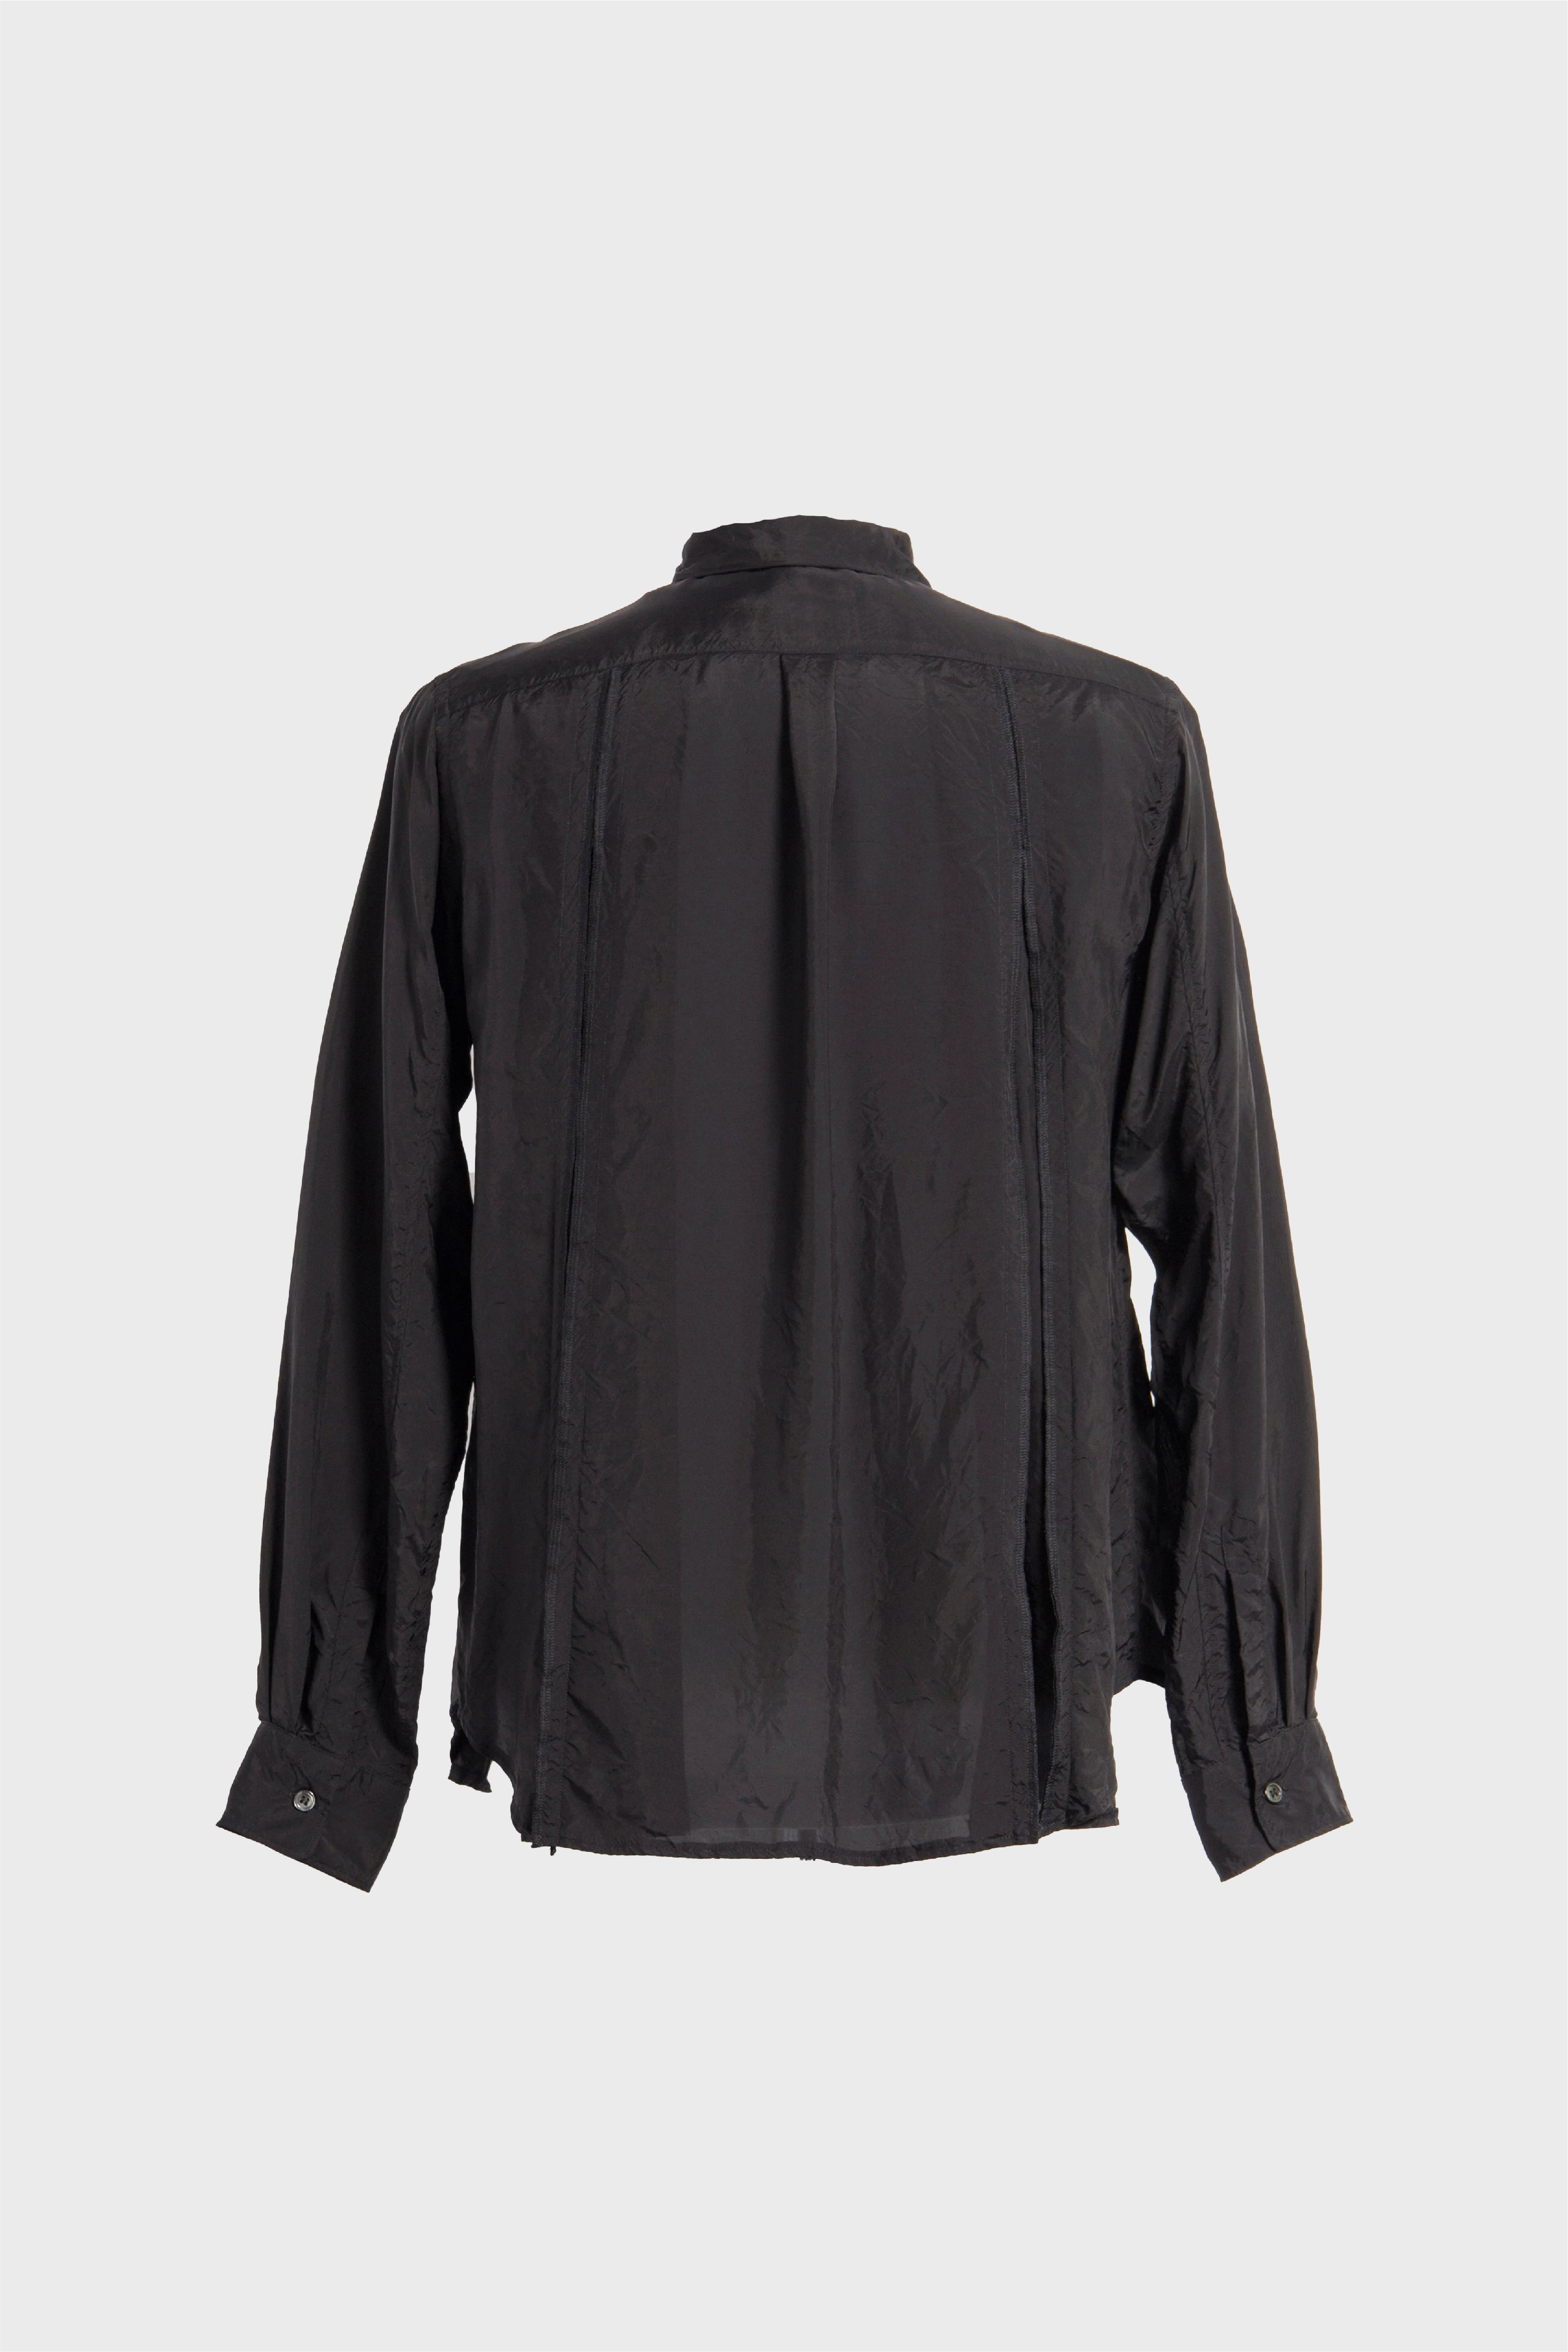 Selectshop FRAME - COMME DES GARÇONS BLACK Pleated Taffeta Shirt Shirts Concept Store Dubai